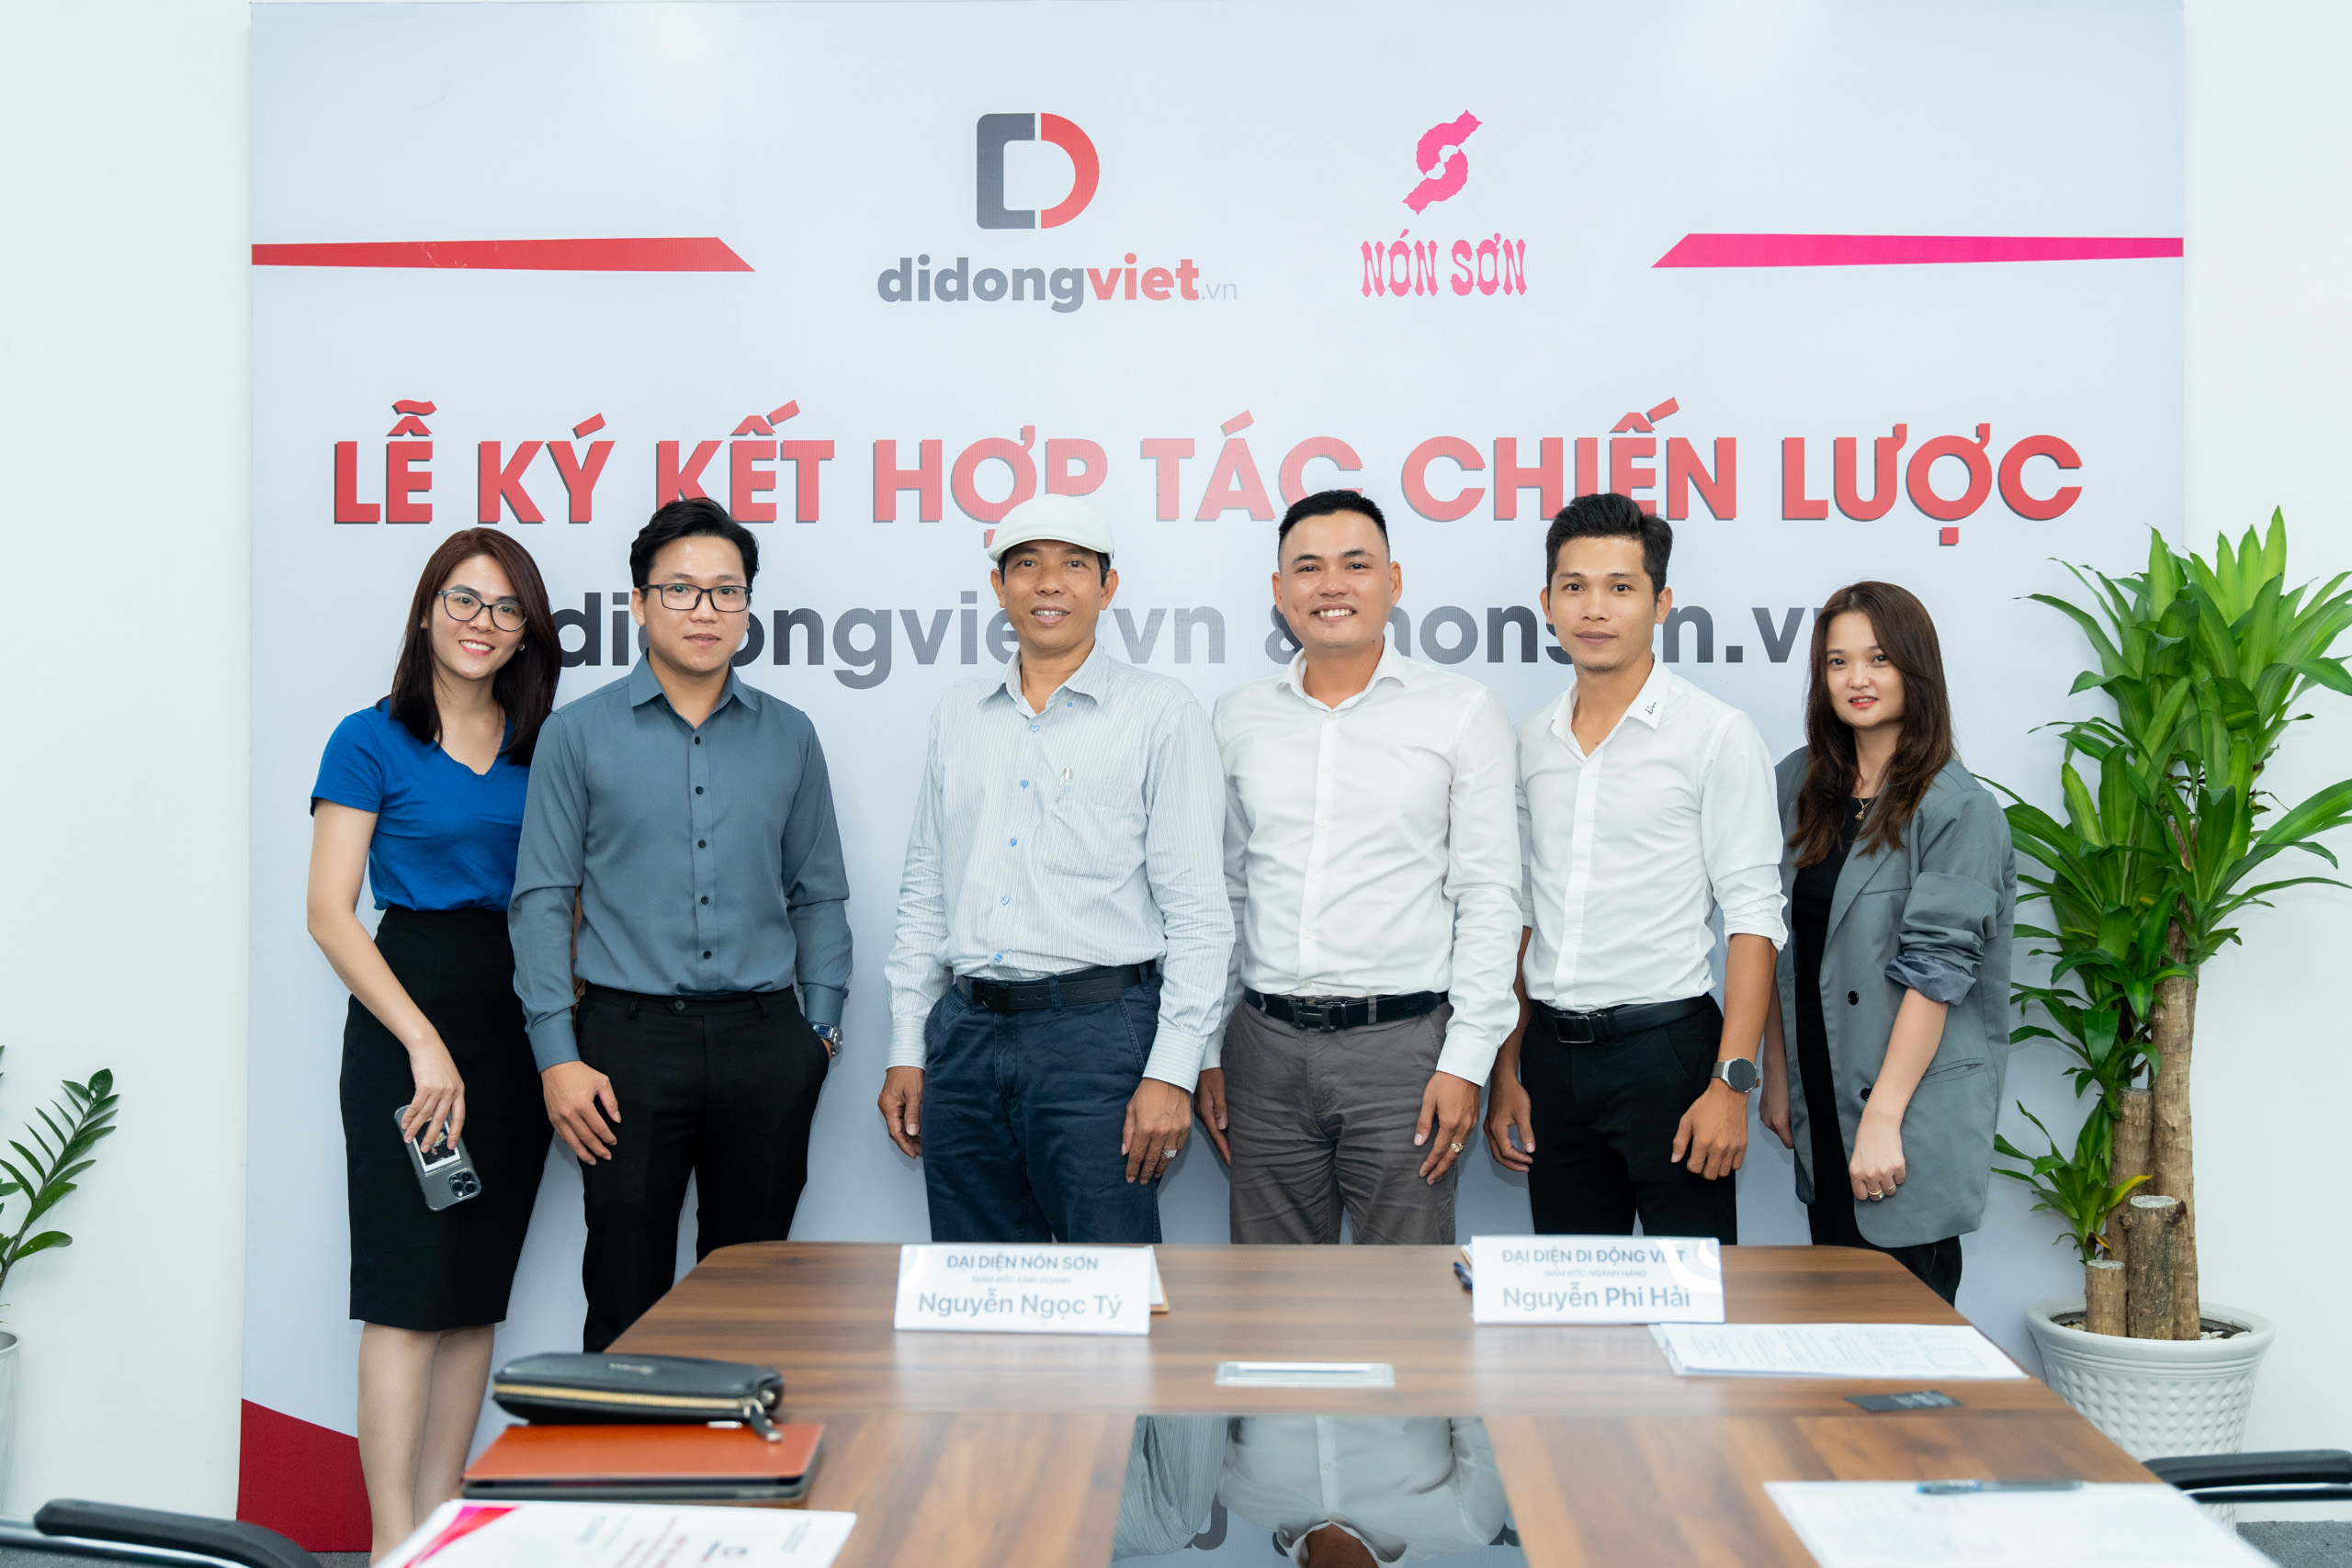 Di Động Việt ký kết hợp tác với Nón Sơn nhằm chung tay bảo vệ sự an toàn của khách hàng